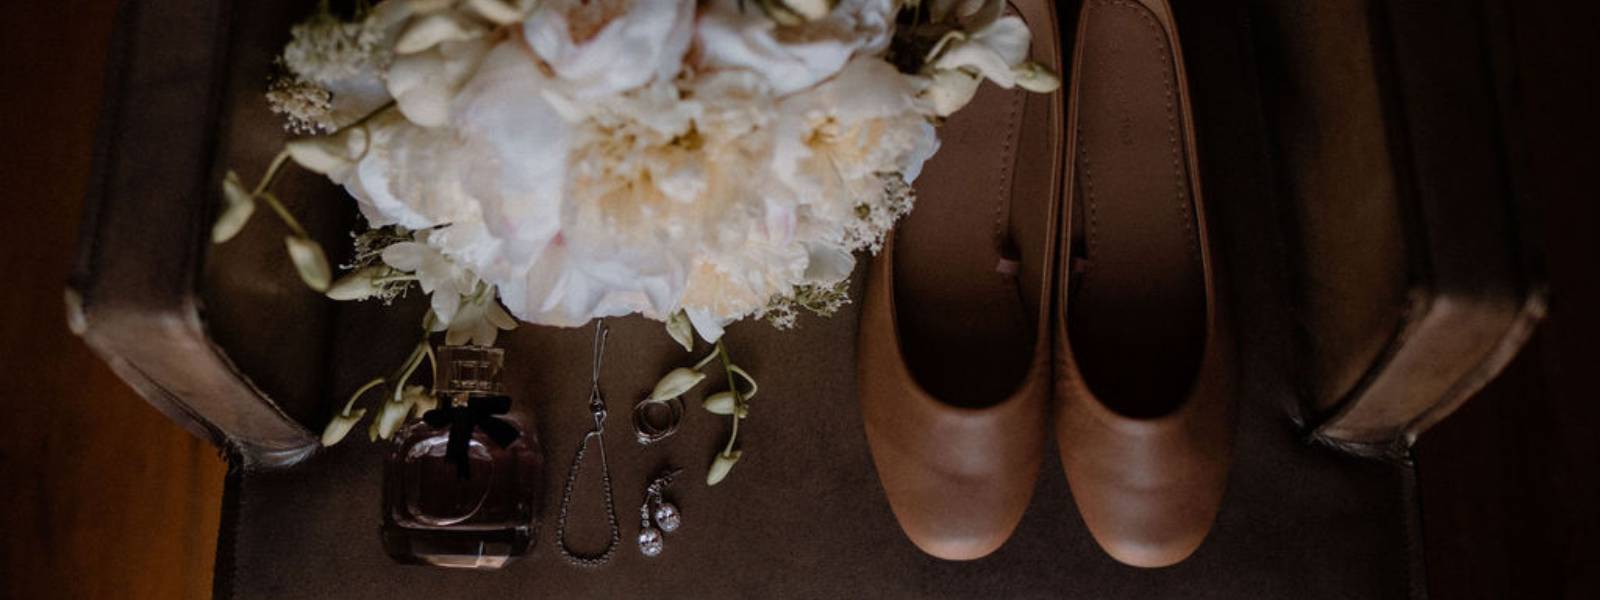 bridal bouquet, wedding ring, wedding shoes, wedding day, wedding decor